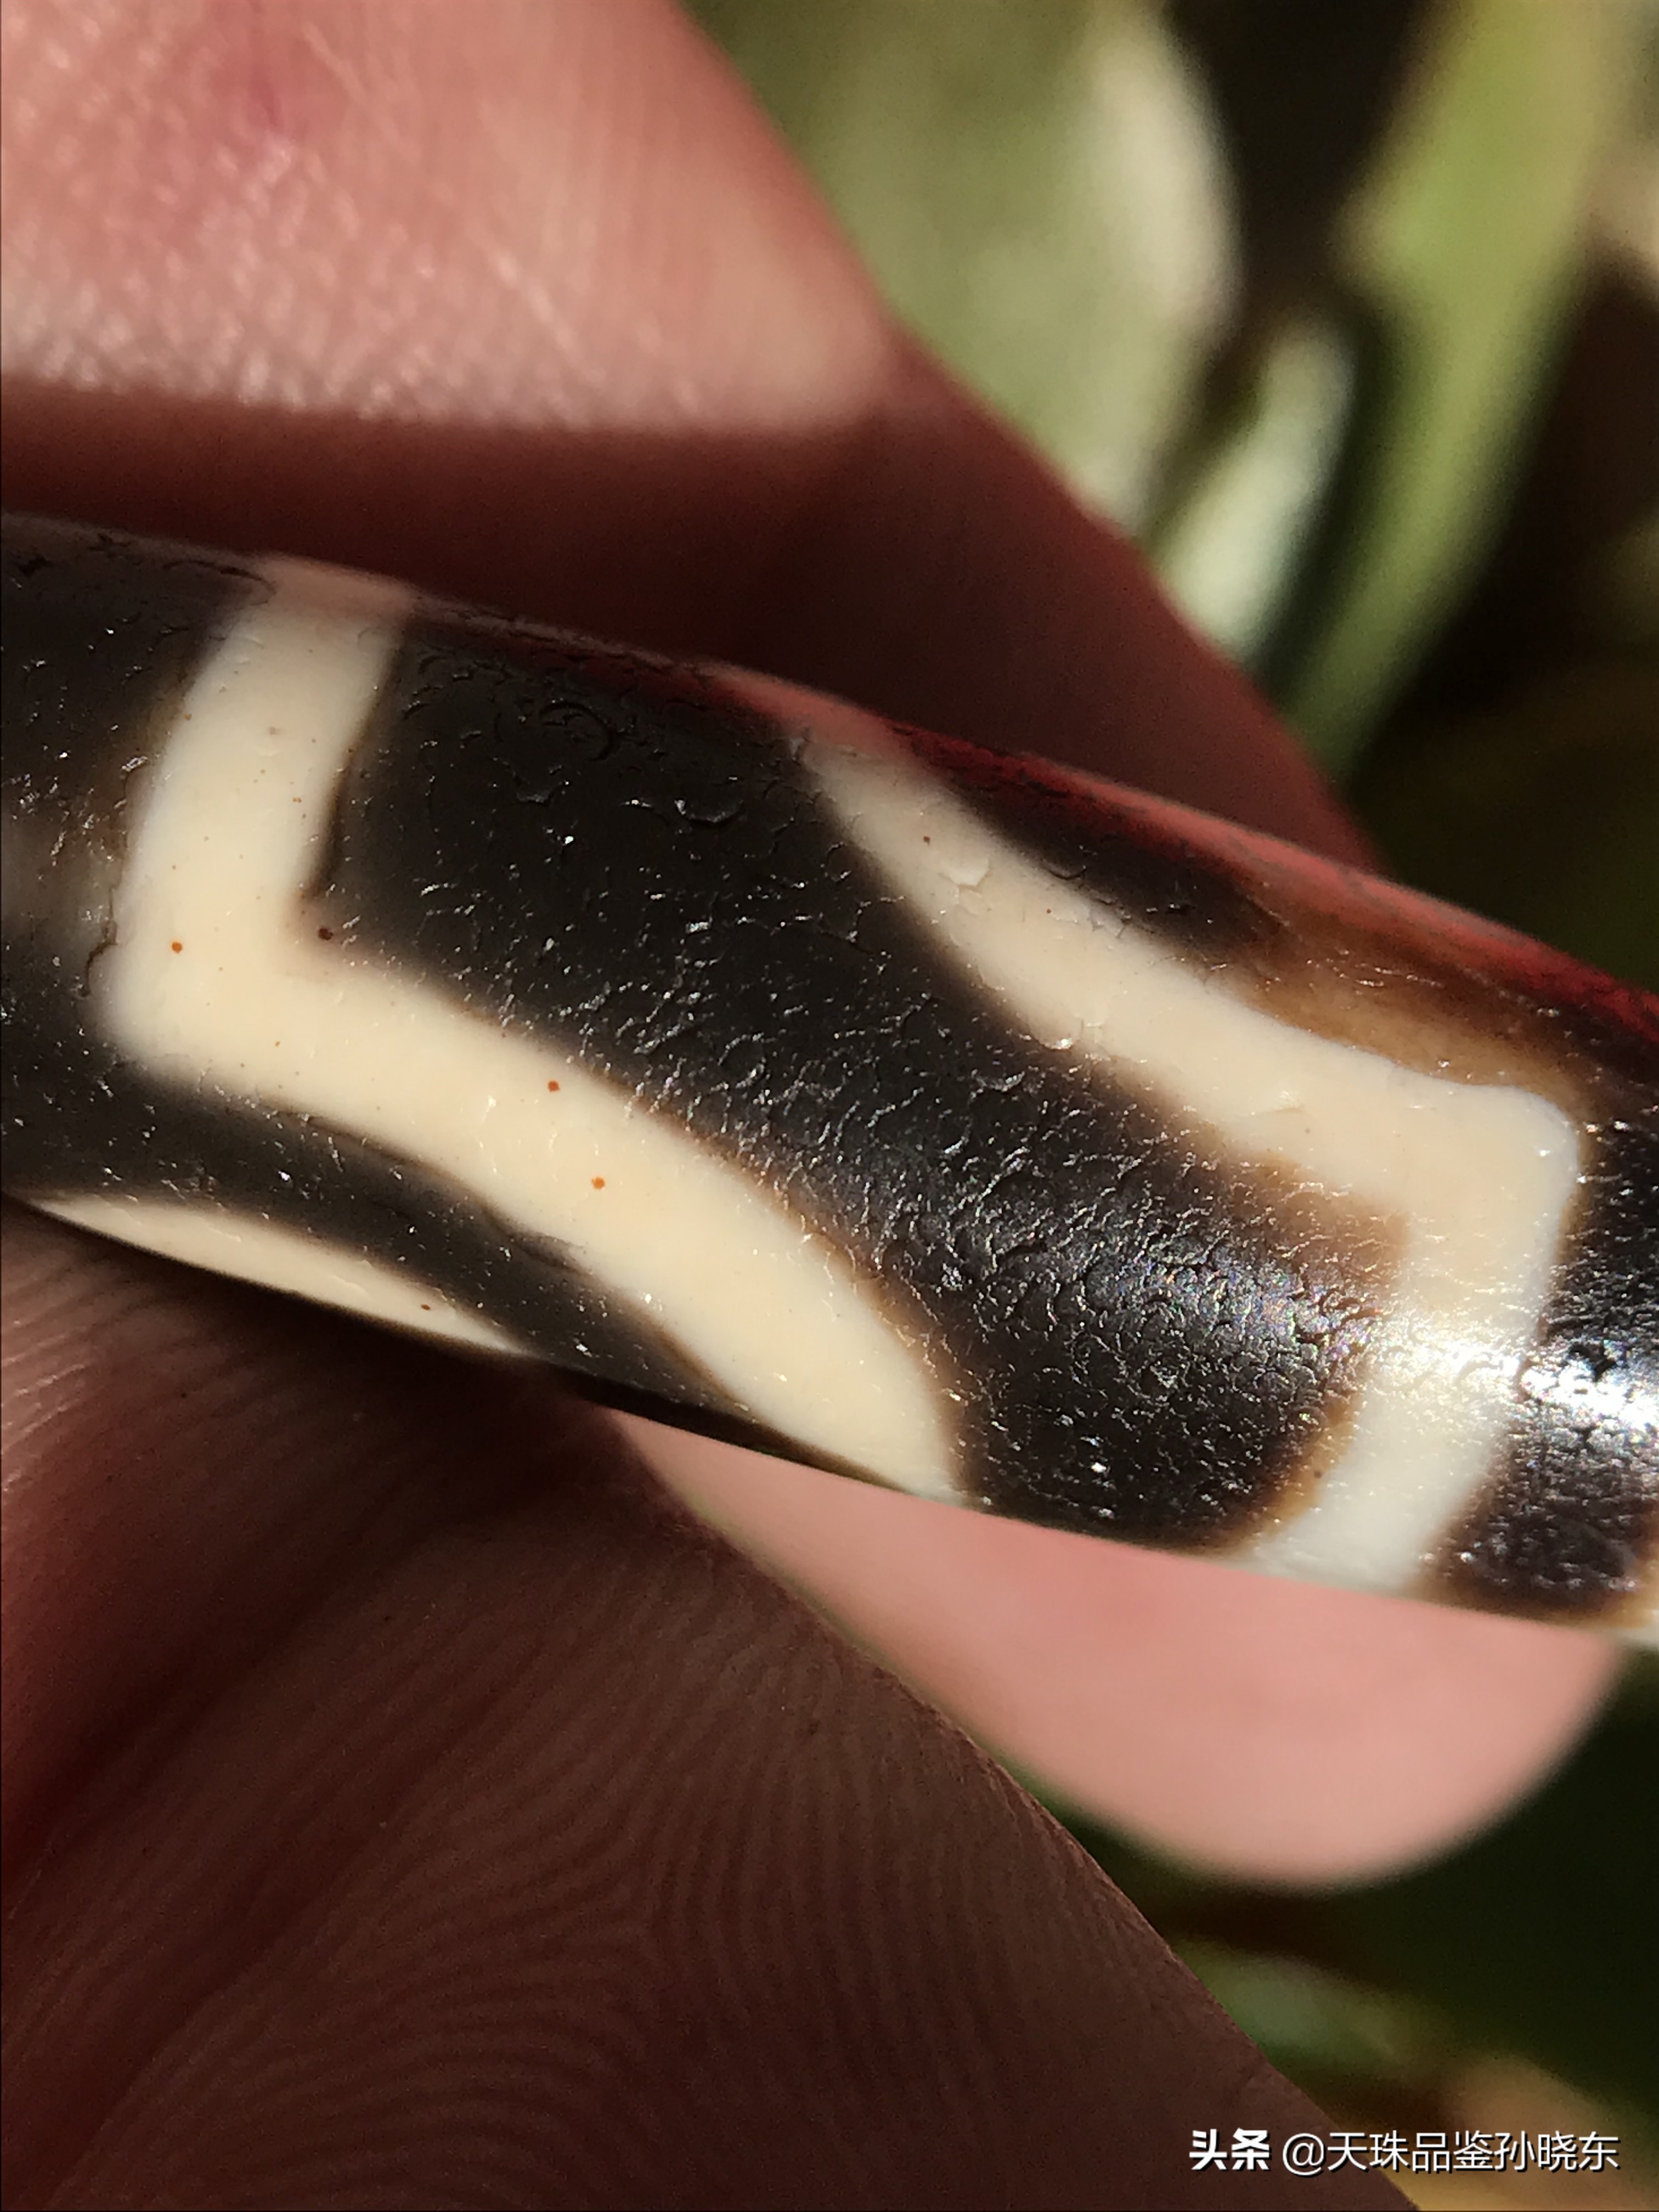 在玛瑙材质的古珠上,呈现马蹄形或半月牙形,先来观察一下天珠的风化纹